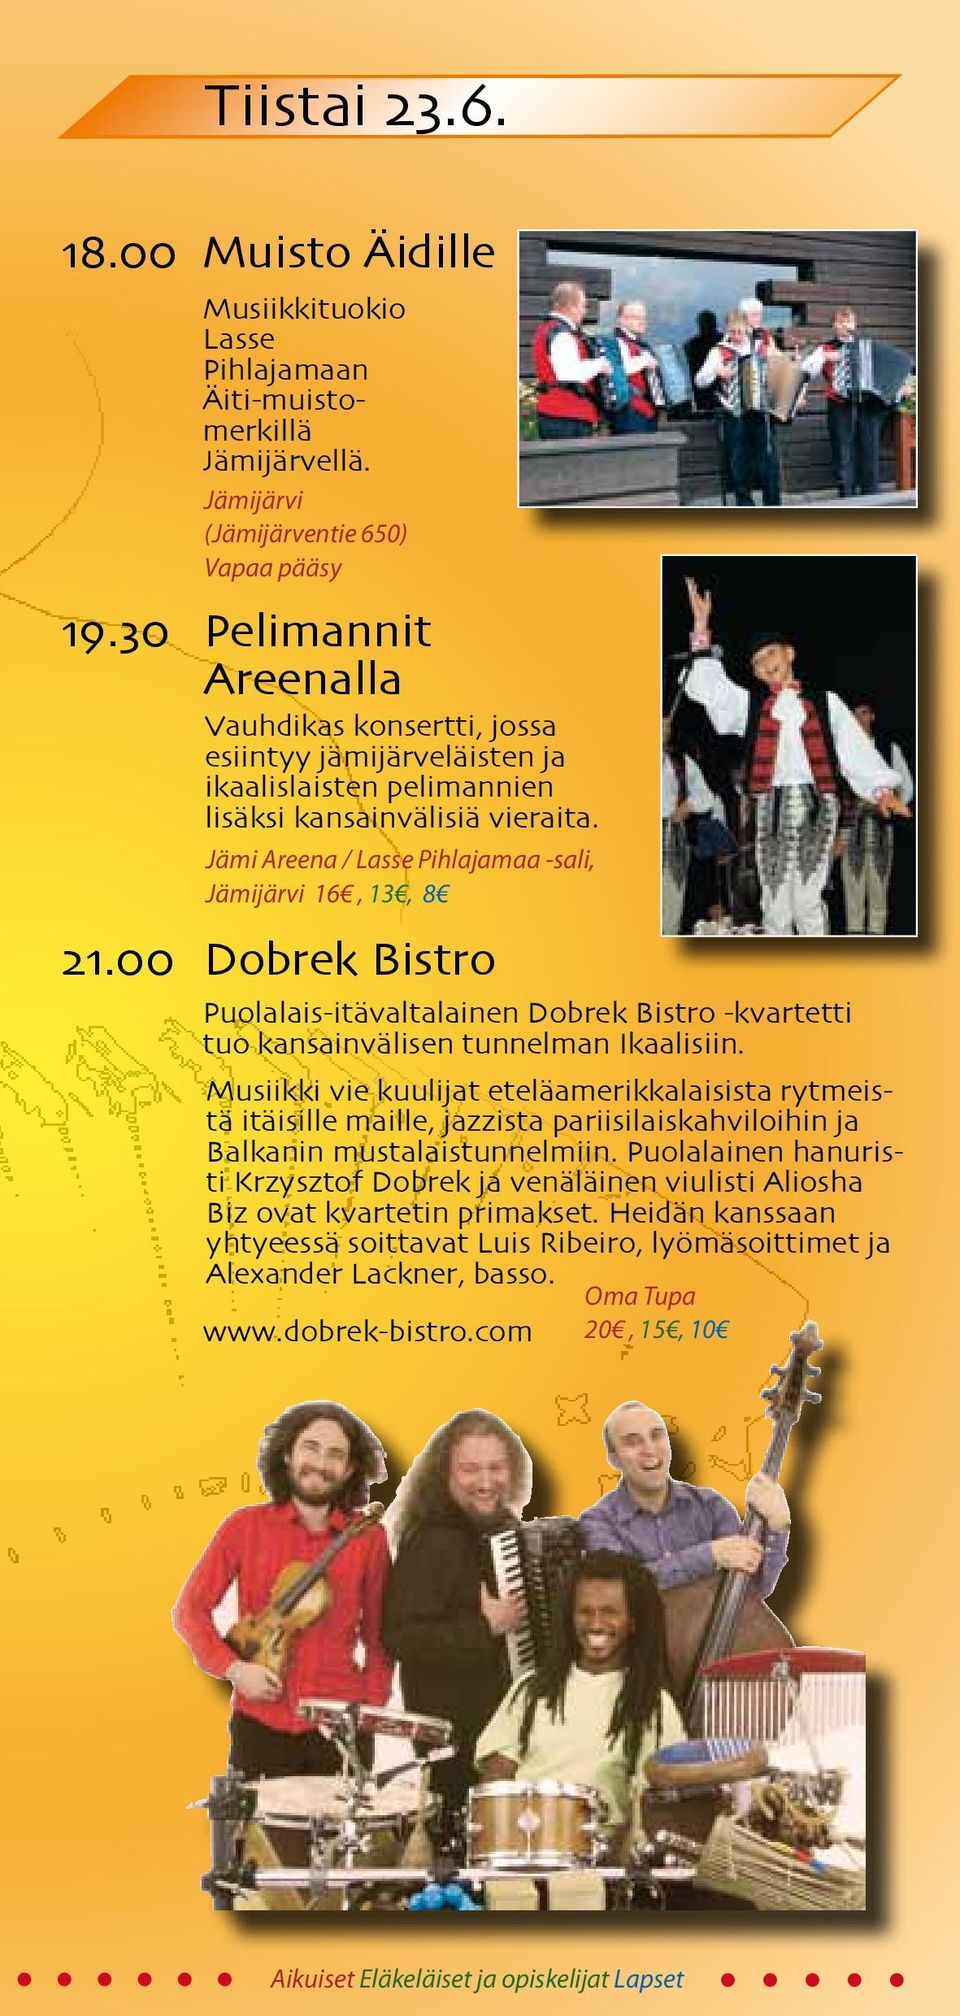 Jämi Areena / Lasse Pihlajamaa -sali, Jämijärvi 16, 13, 8 21.00 Dobrek Bistro Puolalais-itävaltalainen Dobrek Bistro -kvartetti tuo kansainvälisen tunnelman Ikaalisiin.